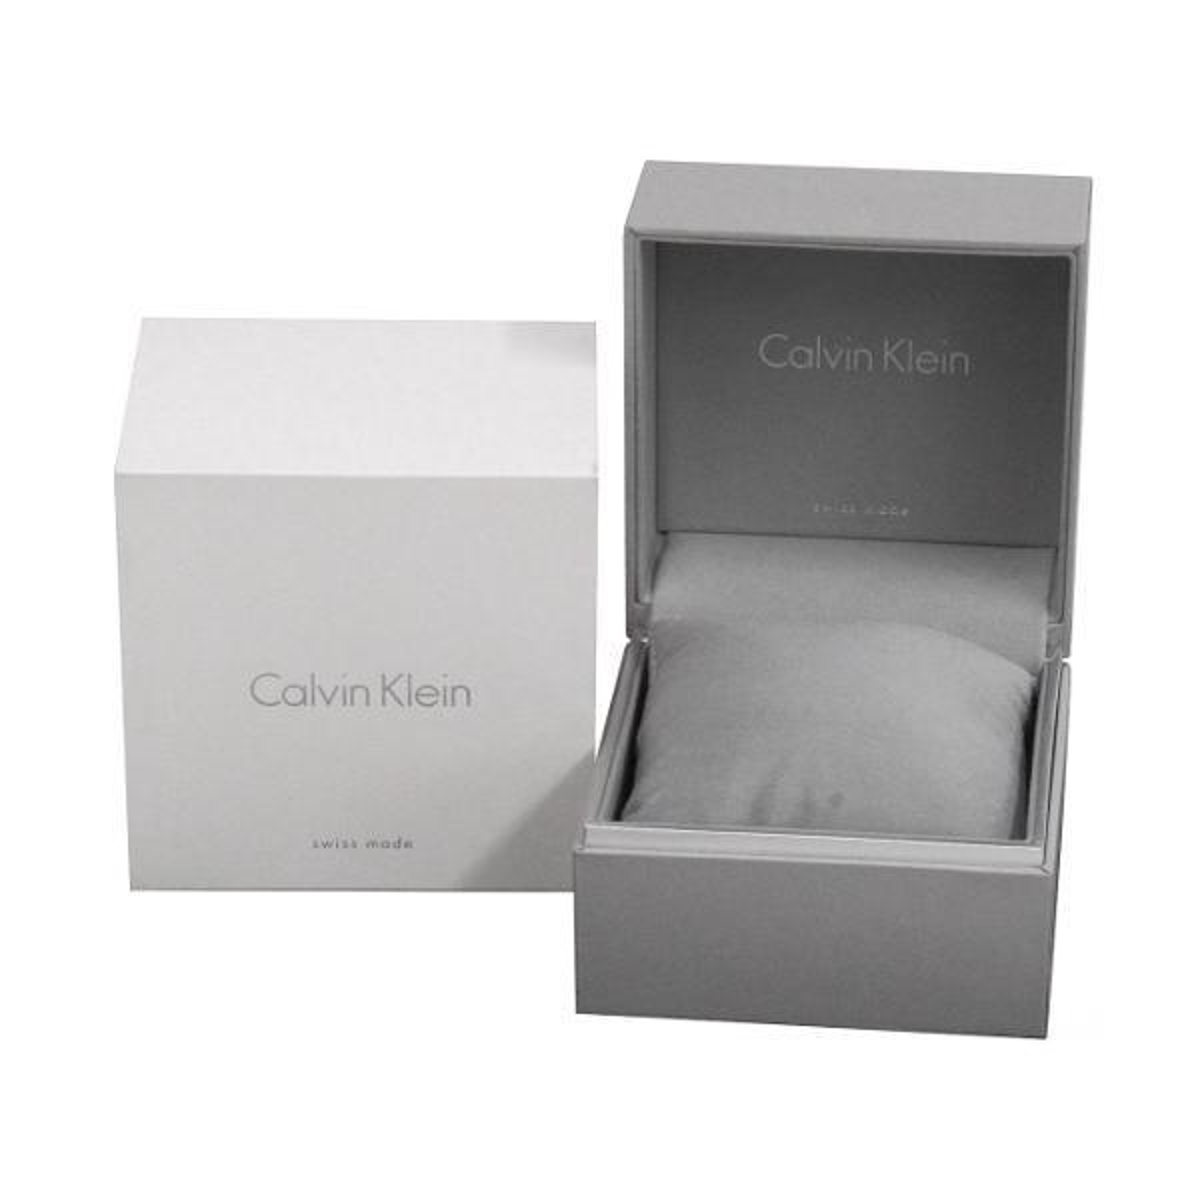 Actualizar 104+ imagen calvin klein packaging - Giaoduchtn.edu.vn